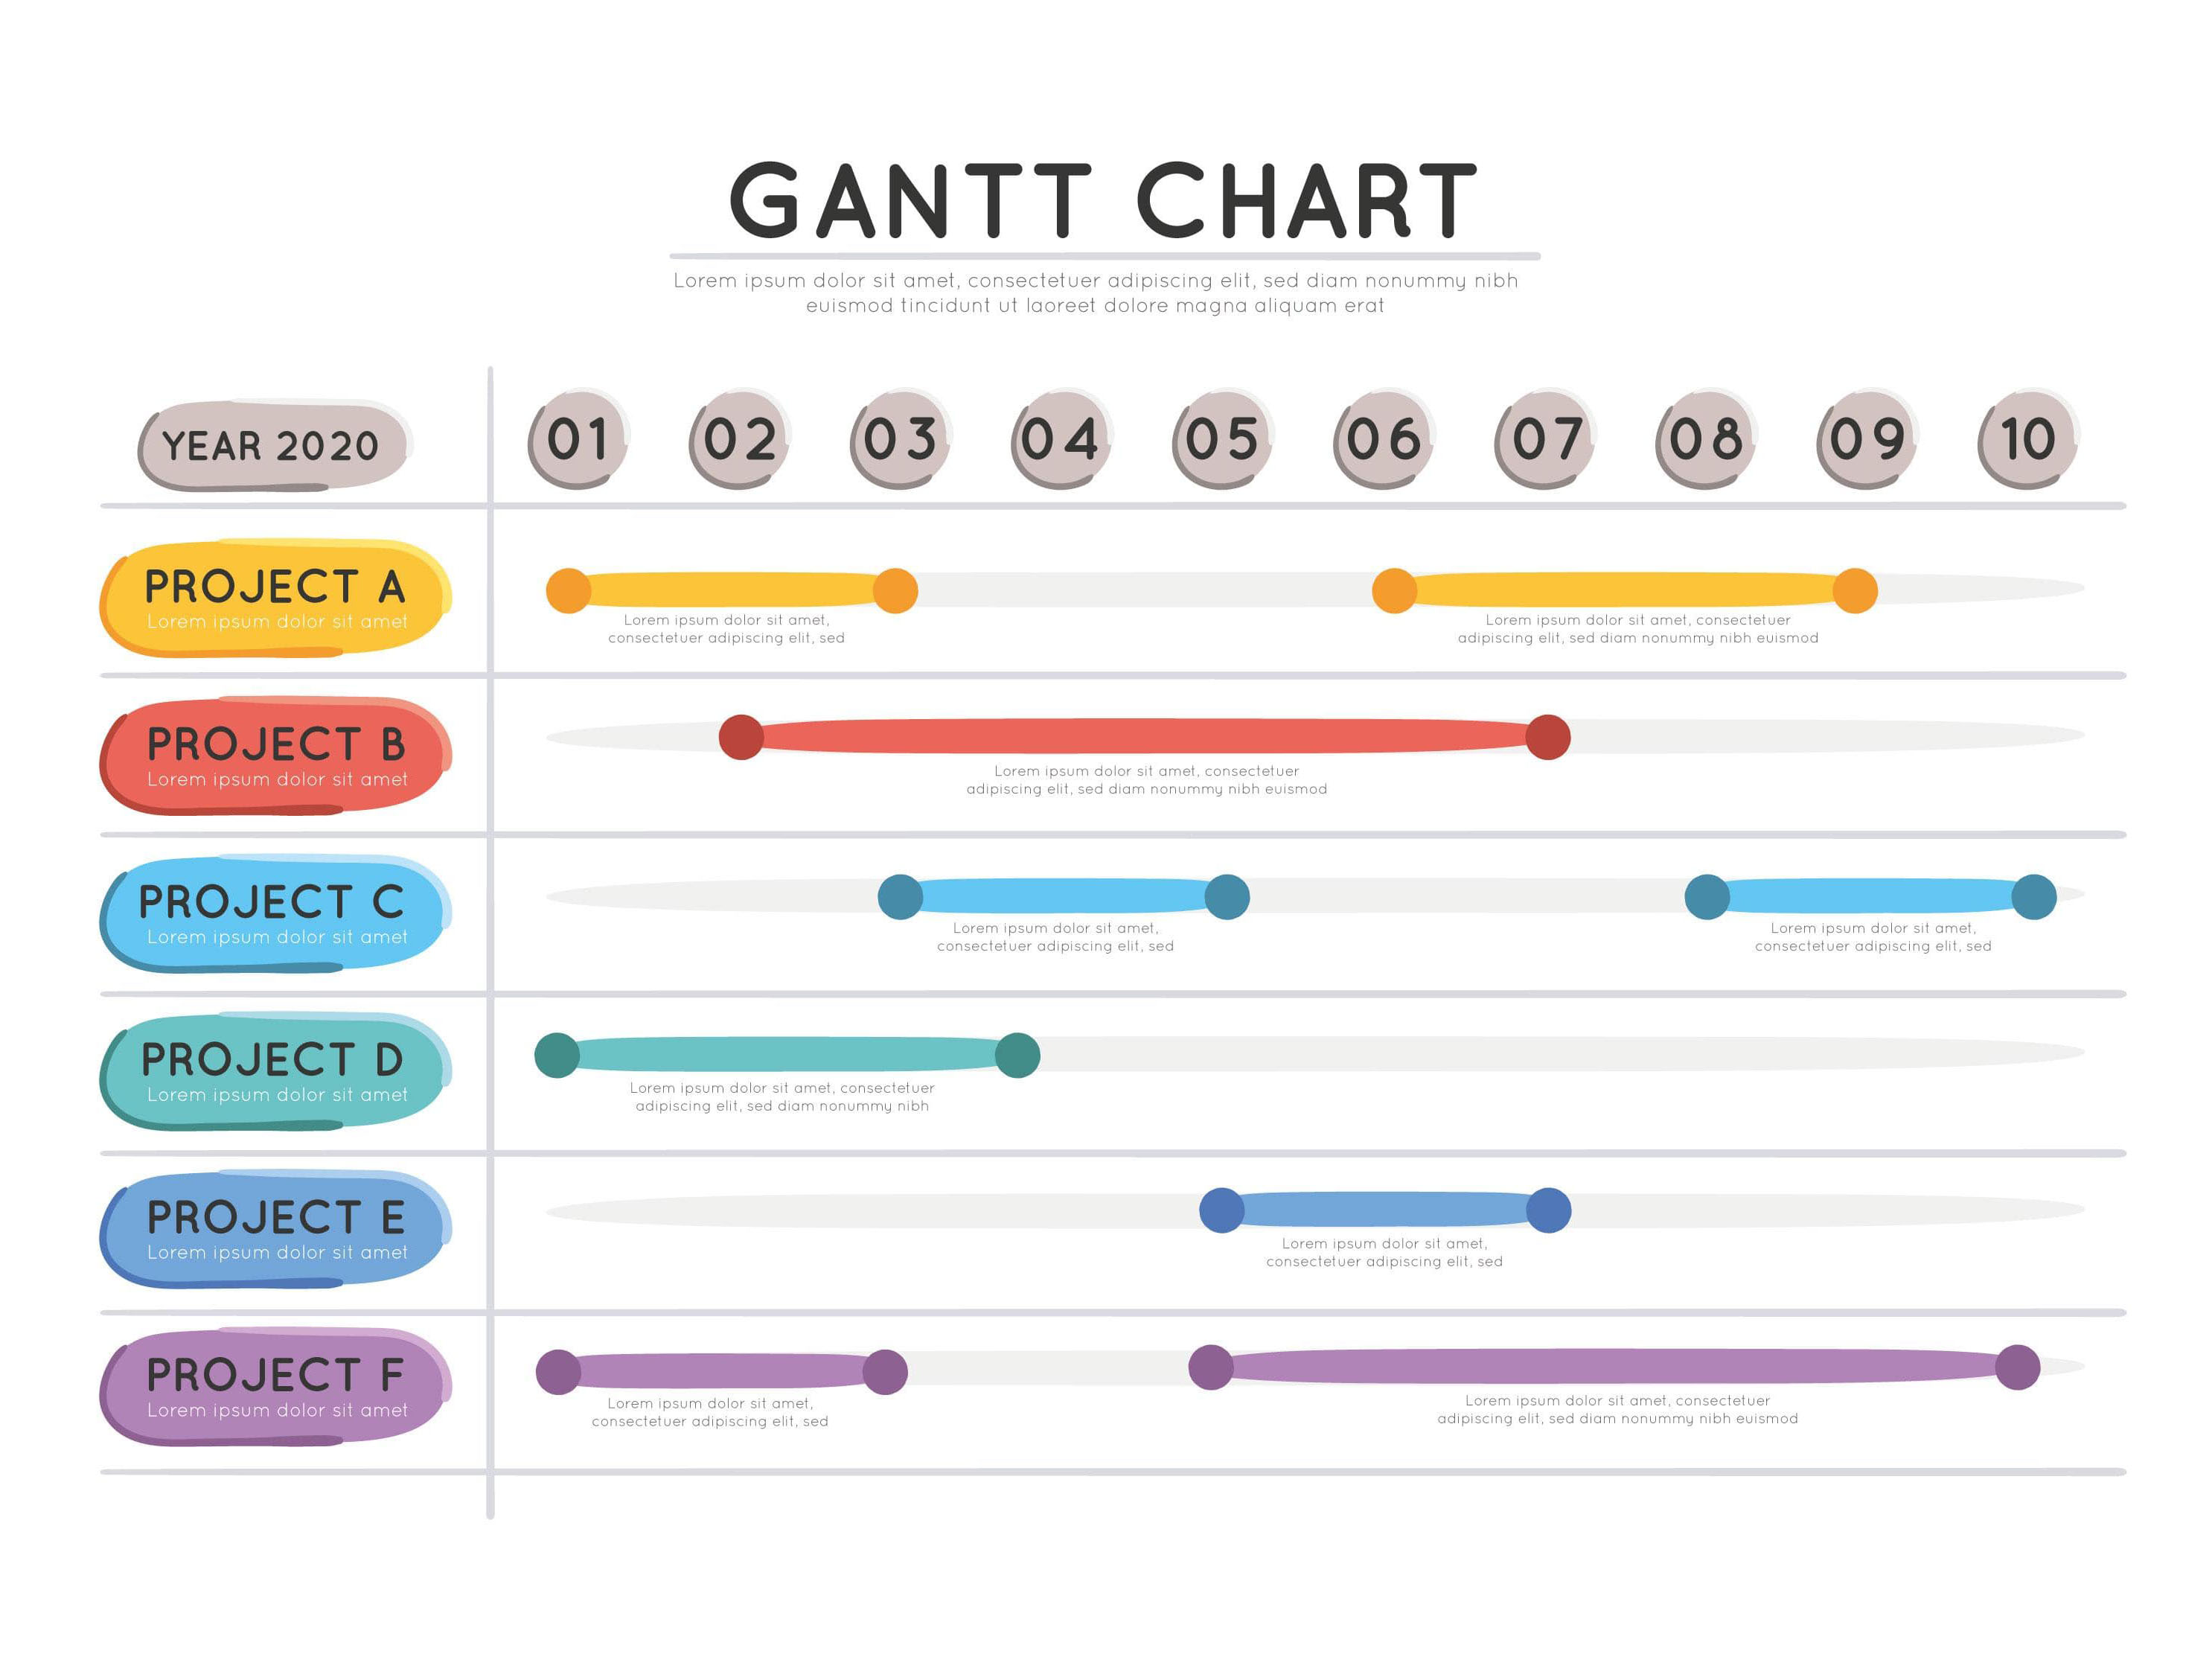 Hướng dẫn vẽ biểu đồ Gantt trong excel  Quản lý công việc bằng biểu đồ  gannt  YouTube